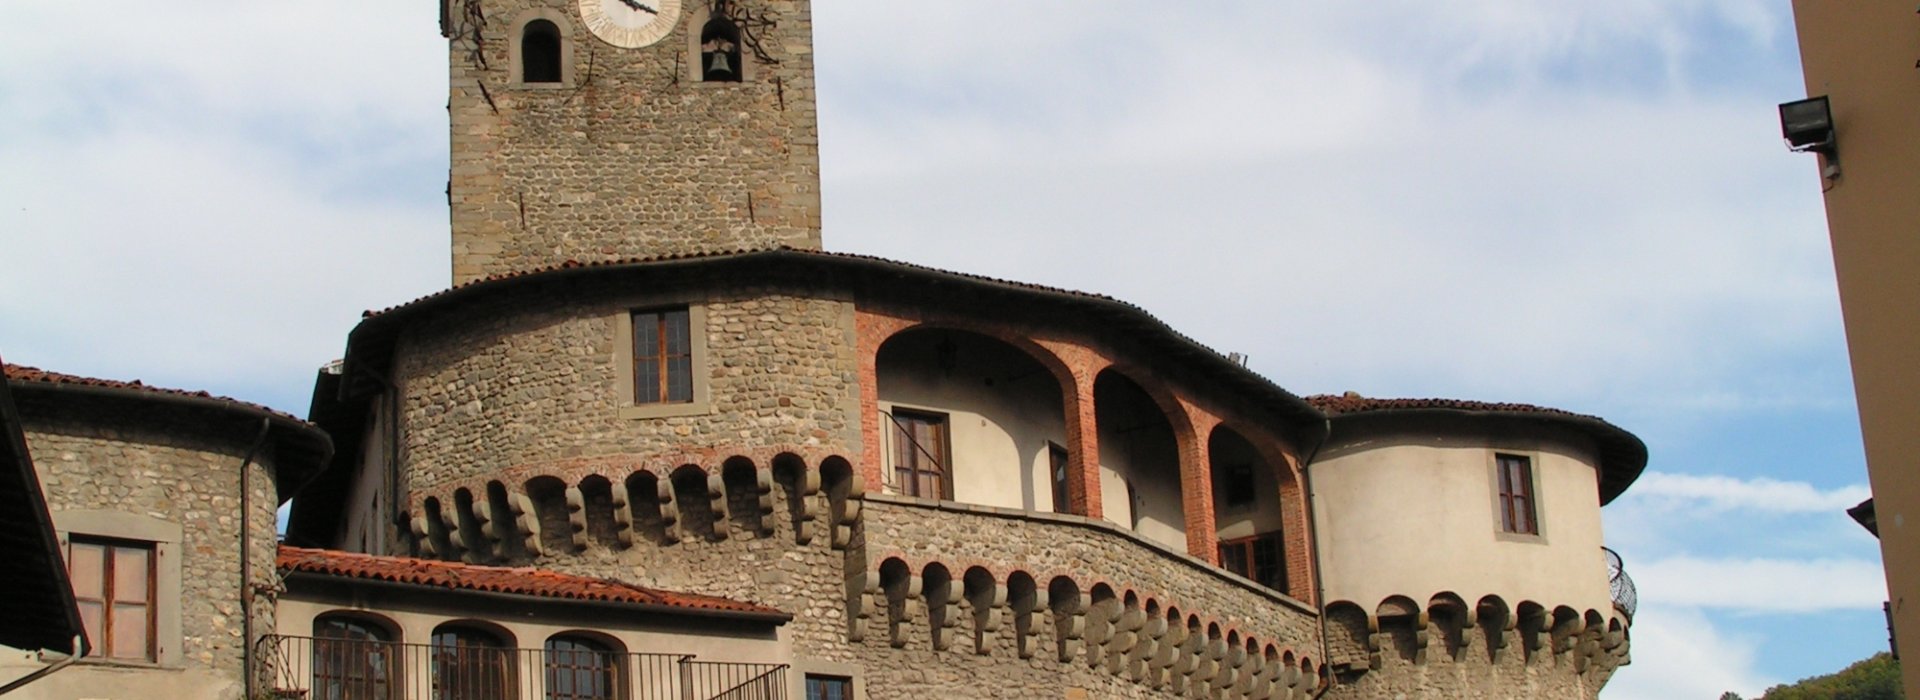 The Rocca Ariostesca in Castelnuovo di Garfagnana